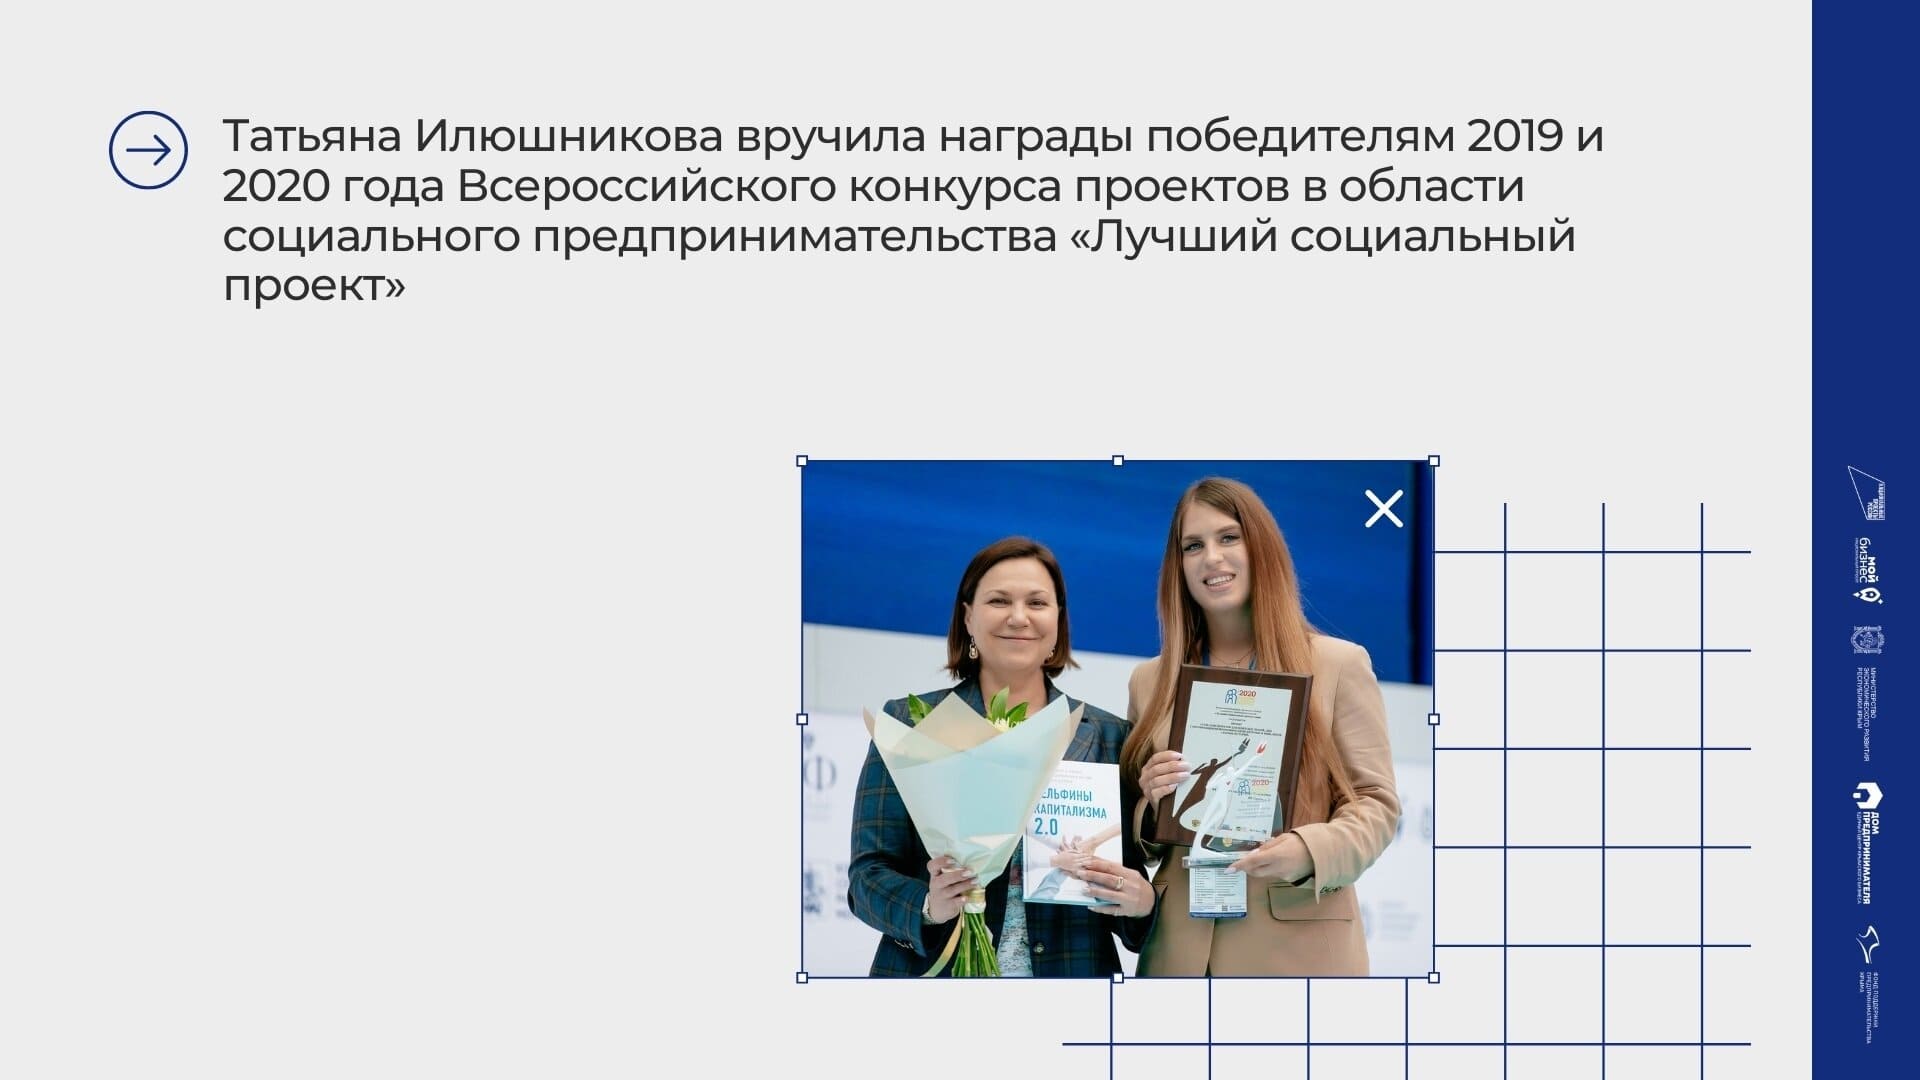 Татьяна Илюшникова: Социальное предпринимательство уникальный вид деятельности – помогаешь людям и зарабатываешь деньги